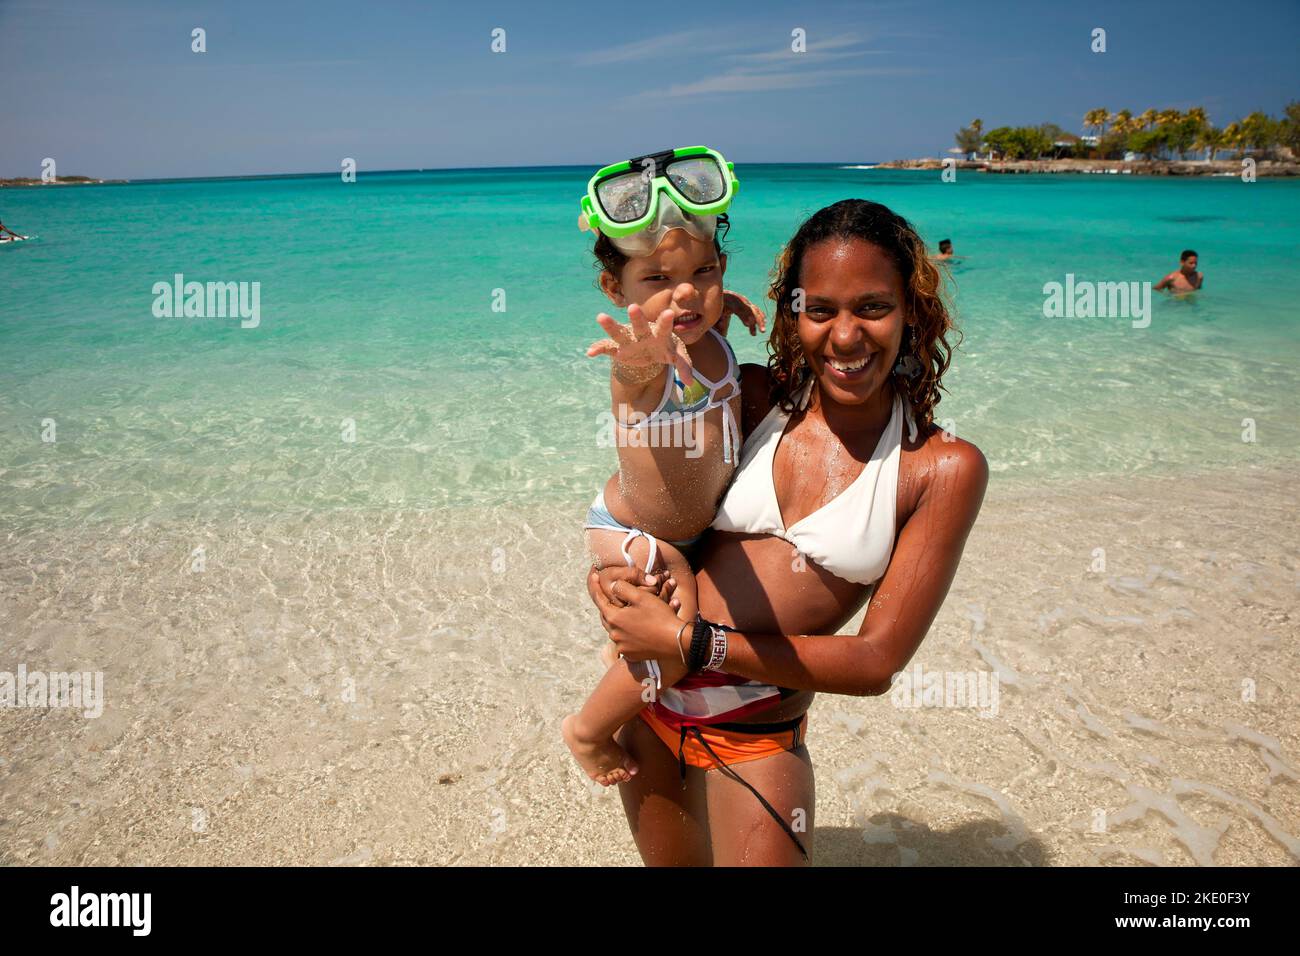 Froehliche junge Kubanerin mit kleinem Maedchen auf dem Arm am Strand von Bacuranao, Playas del este, Havanna, Kuba, Karibik | giovane coppia cubana sorridente Foto Stock